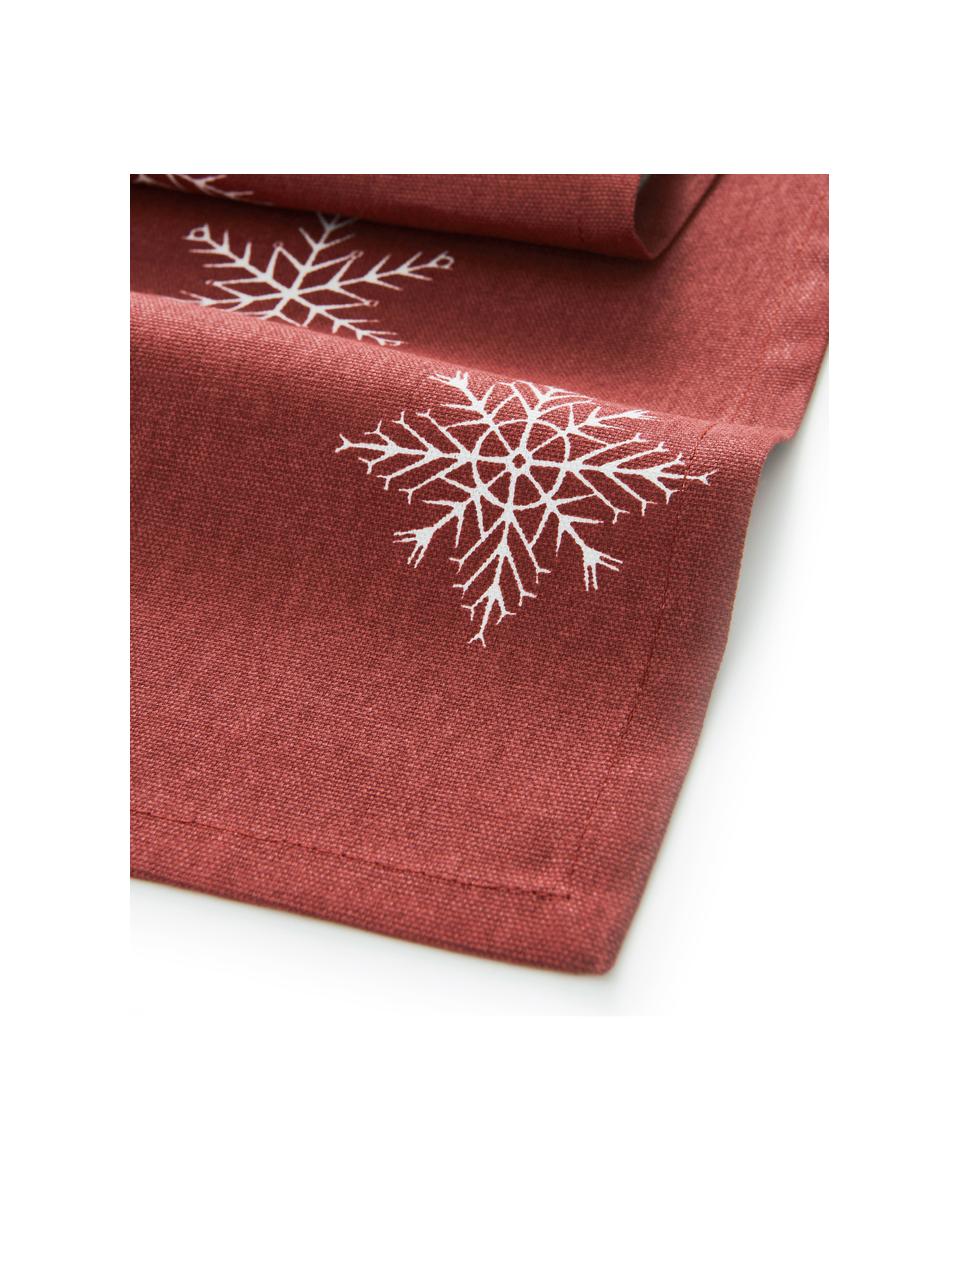 Chemin de table Snow, 100% coton, issu d'une culture durable de coton, Rouge, blanc, 40 x 140 cm